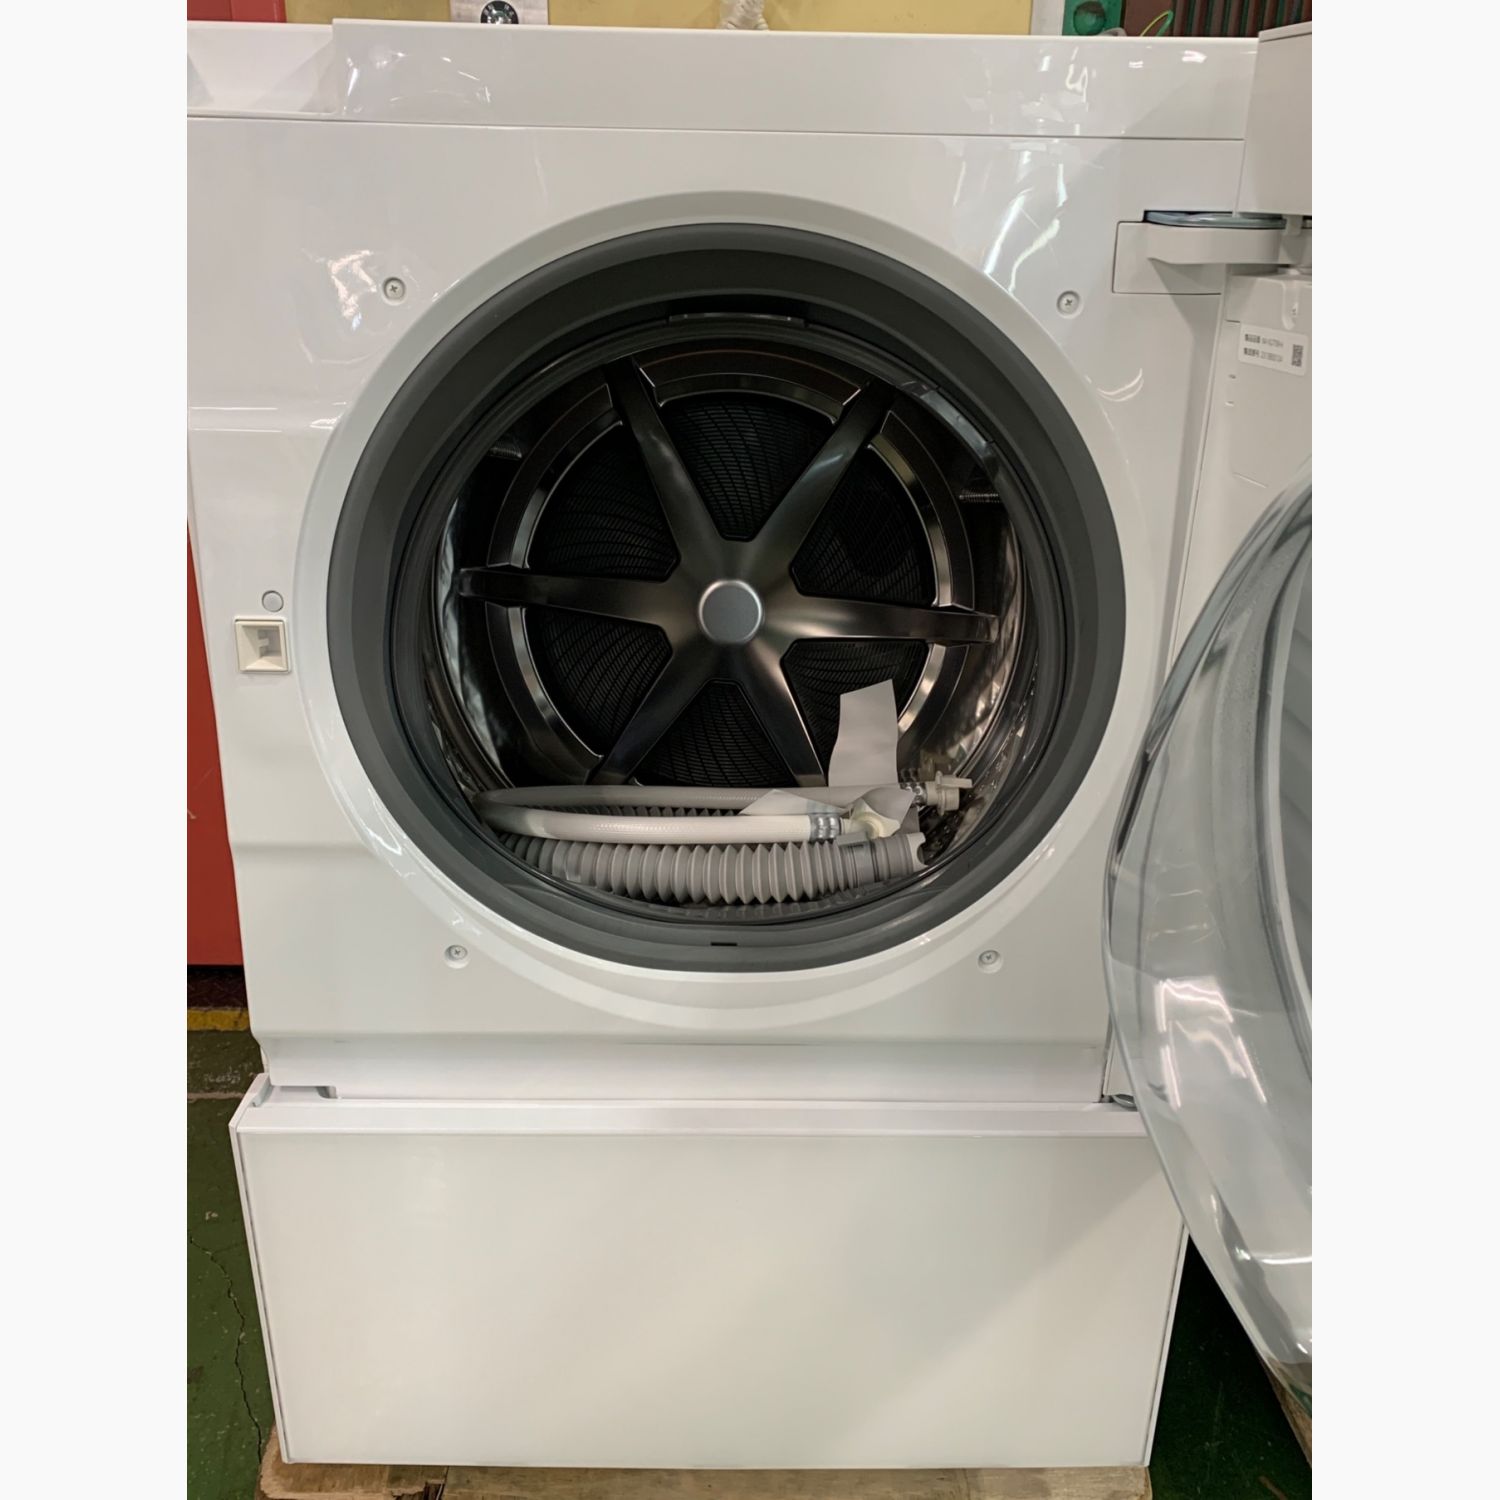 Panasonic (パナソニック) ドラム式洗濯乾燥機 輸送用ボルト有 7.0 